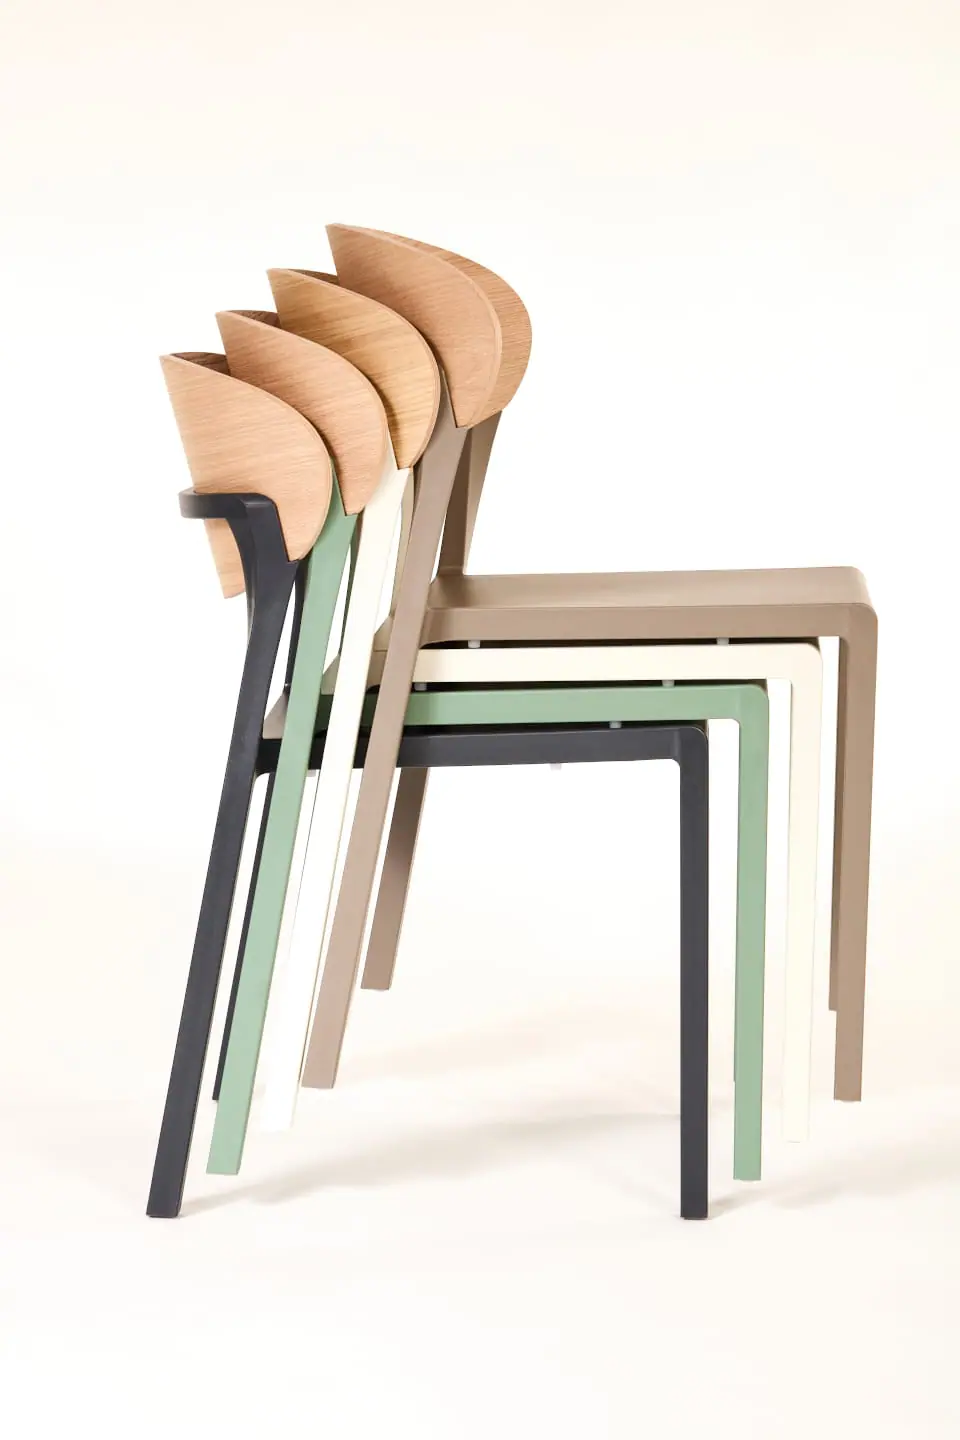 ezpeleta-bake_wood-chair010